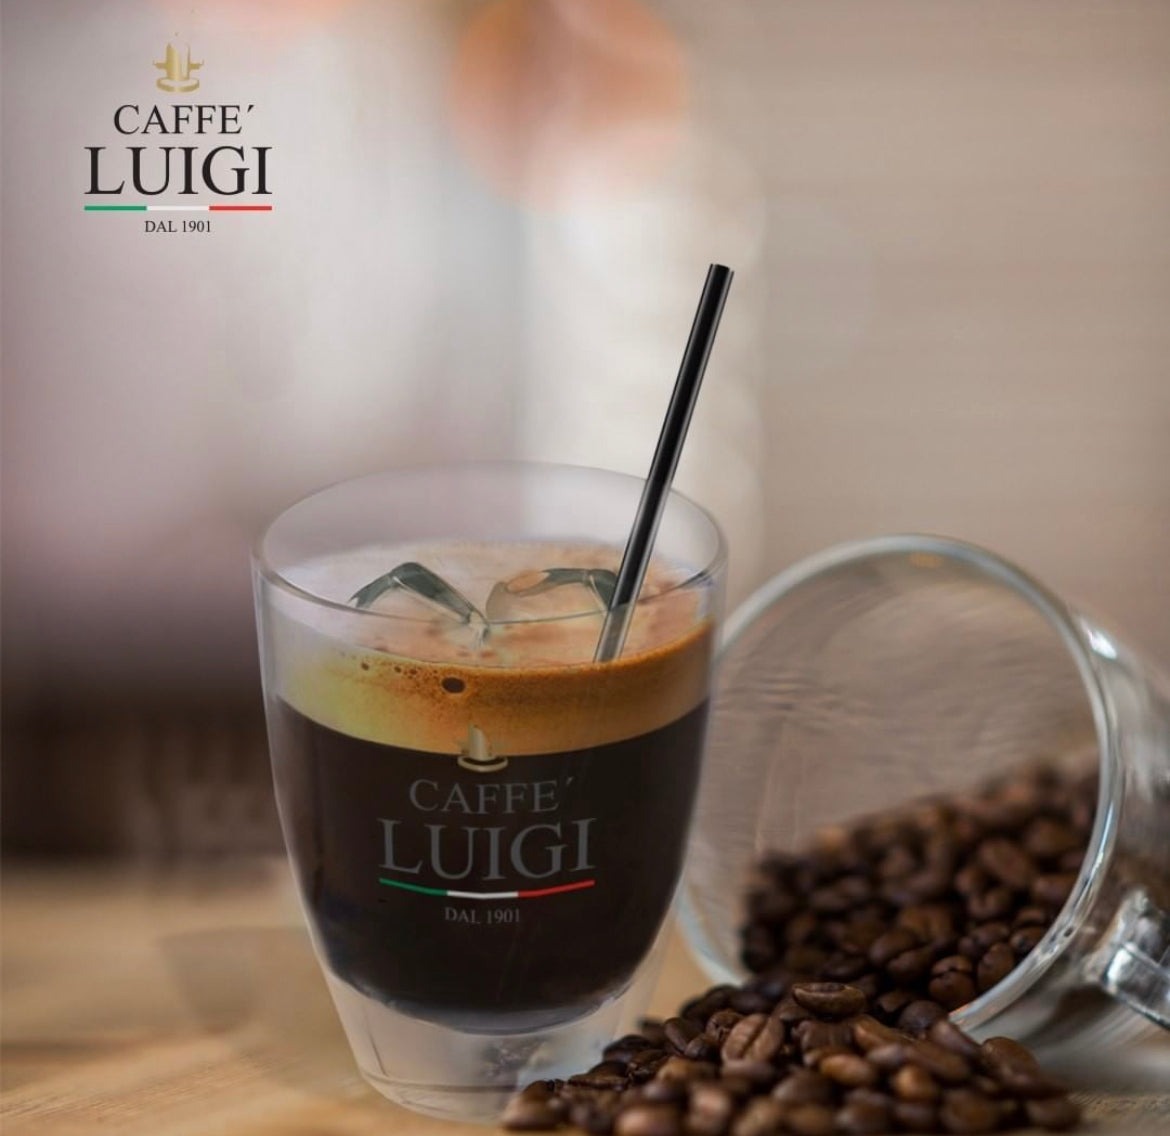 Espresso RICCO Bohnen 1Kg Caffe 'Luigi Ganze Espresso Bohnen Arabica - Robusta + 1 Freddo Cappuccino Glas